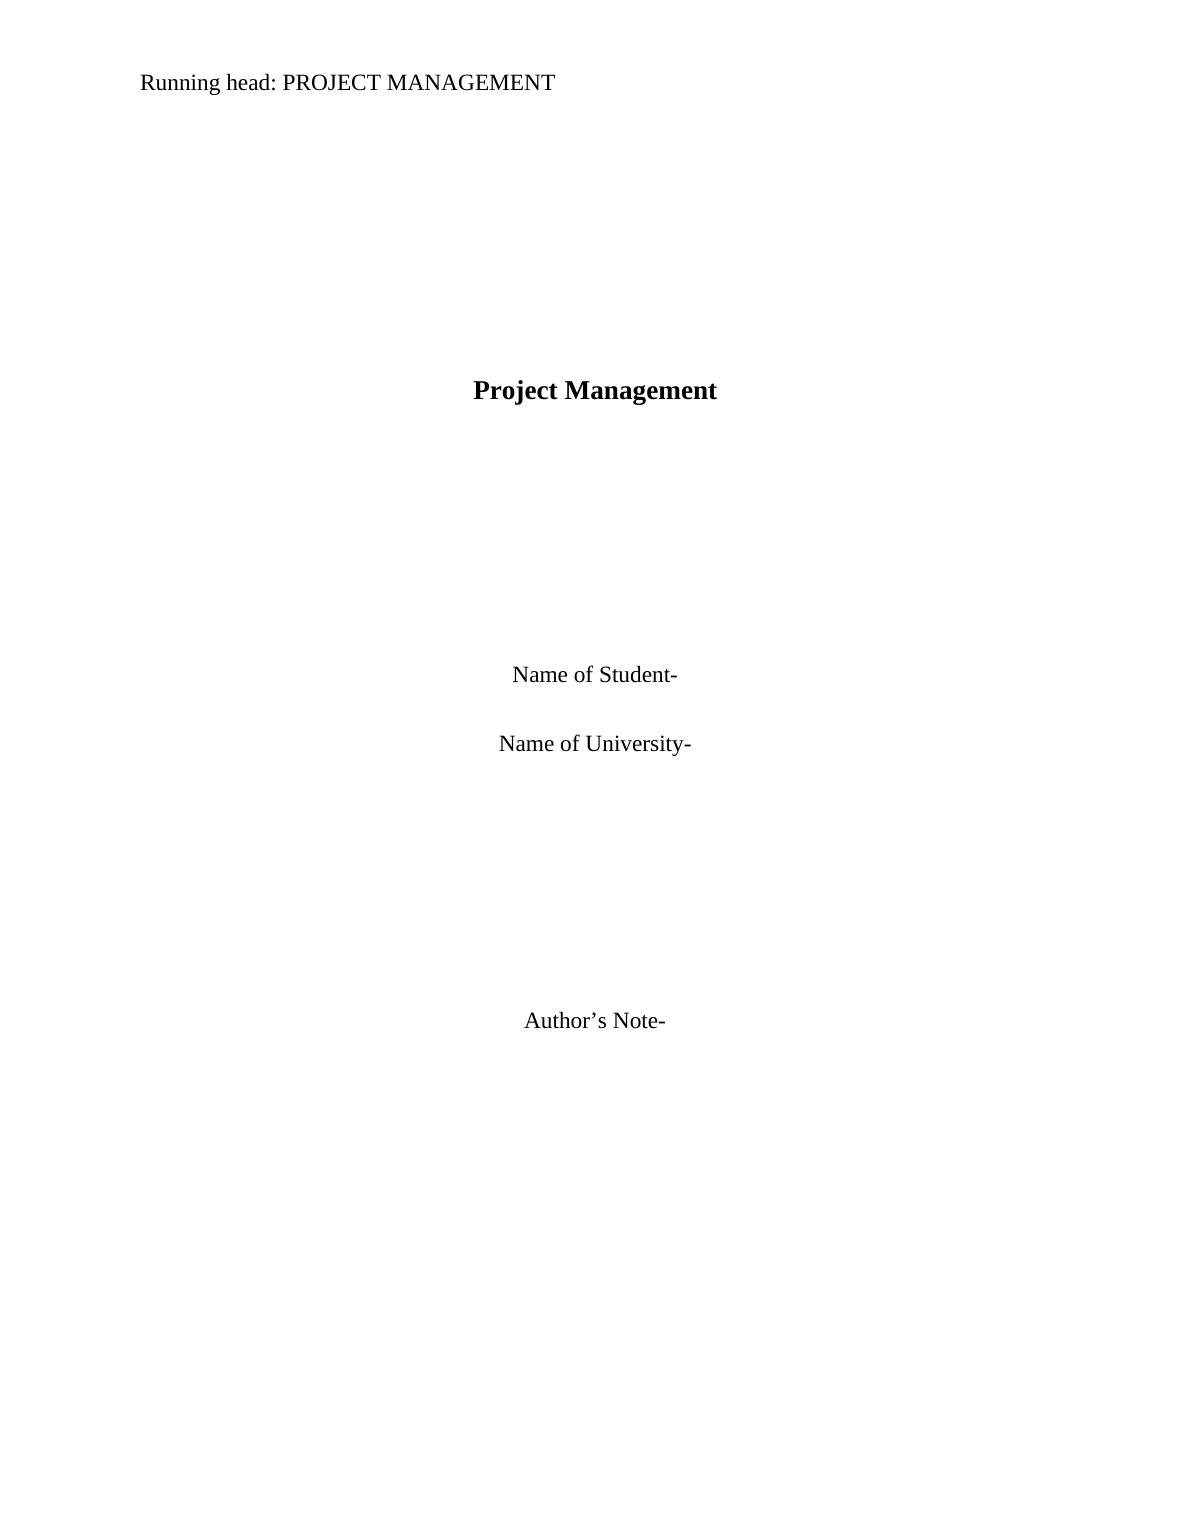 Project Management | Case Study_1